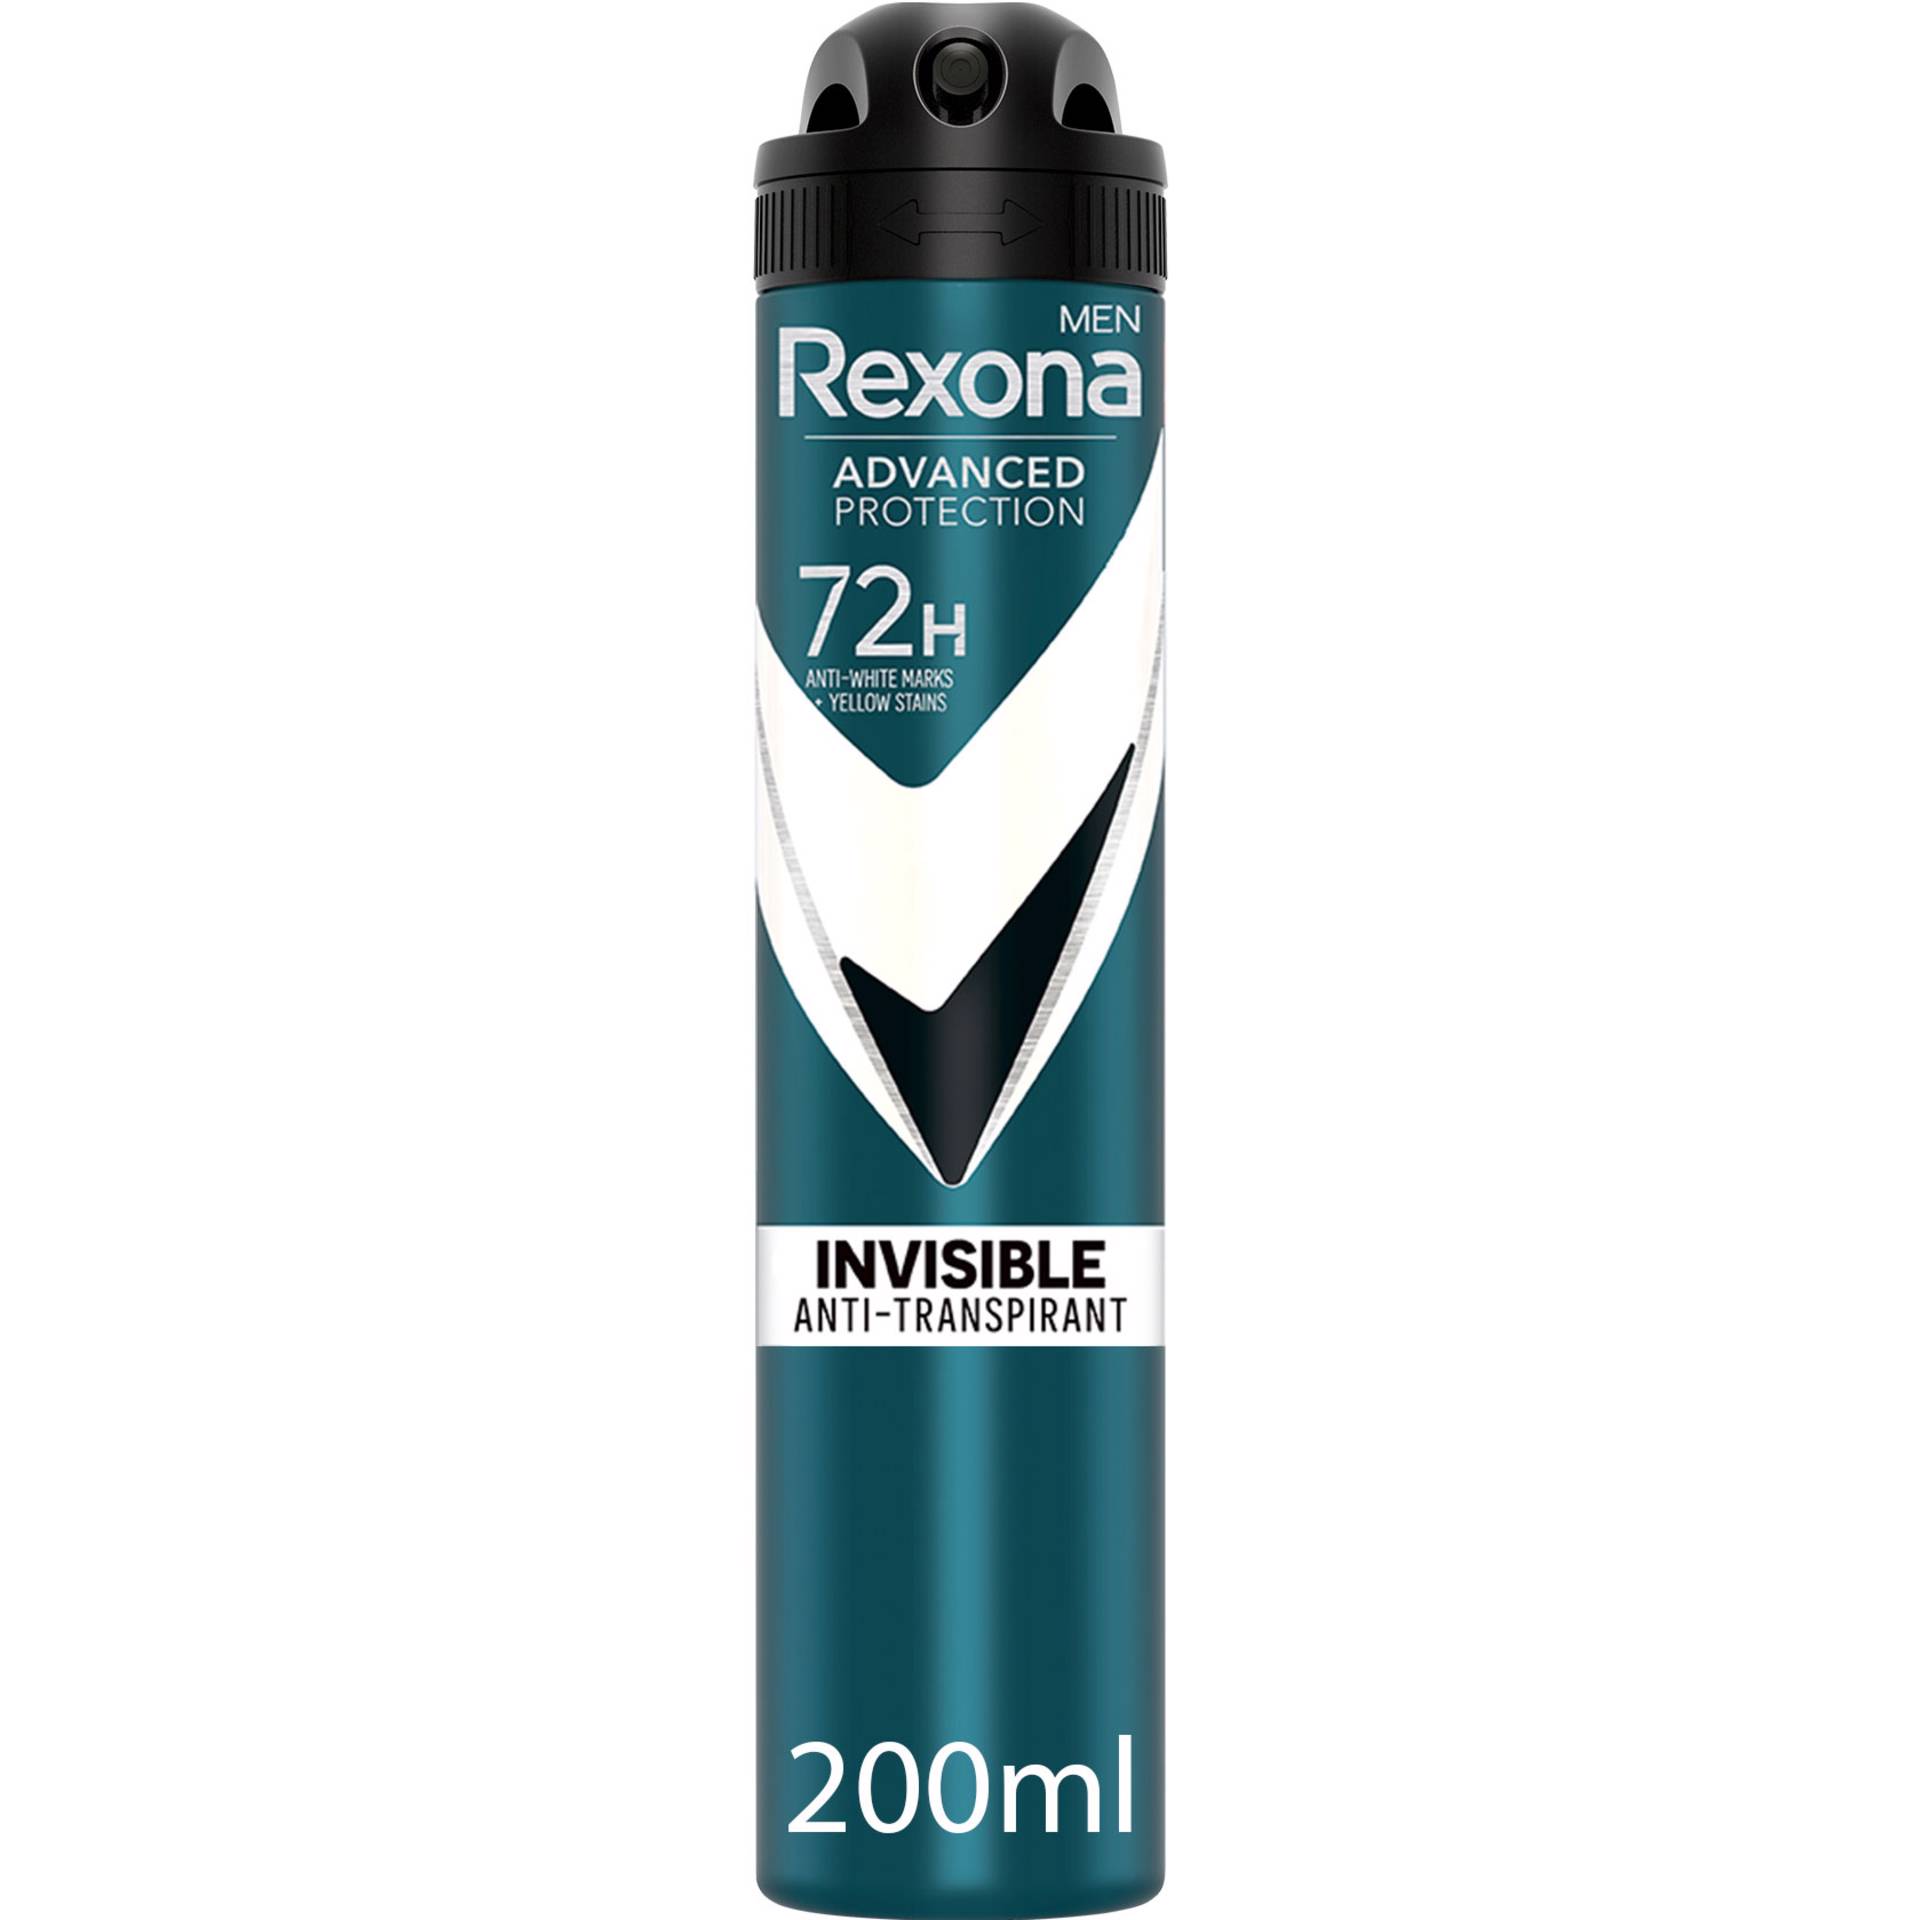 Desodorizante Spray Invisible Black & White Clothes 48H - emb. 150 ml -  Rexona